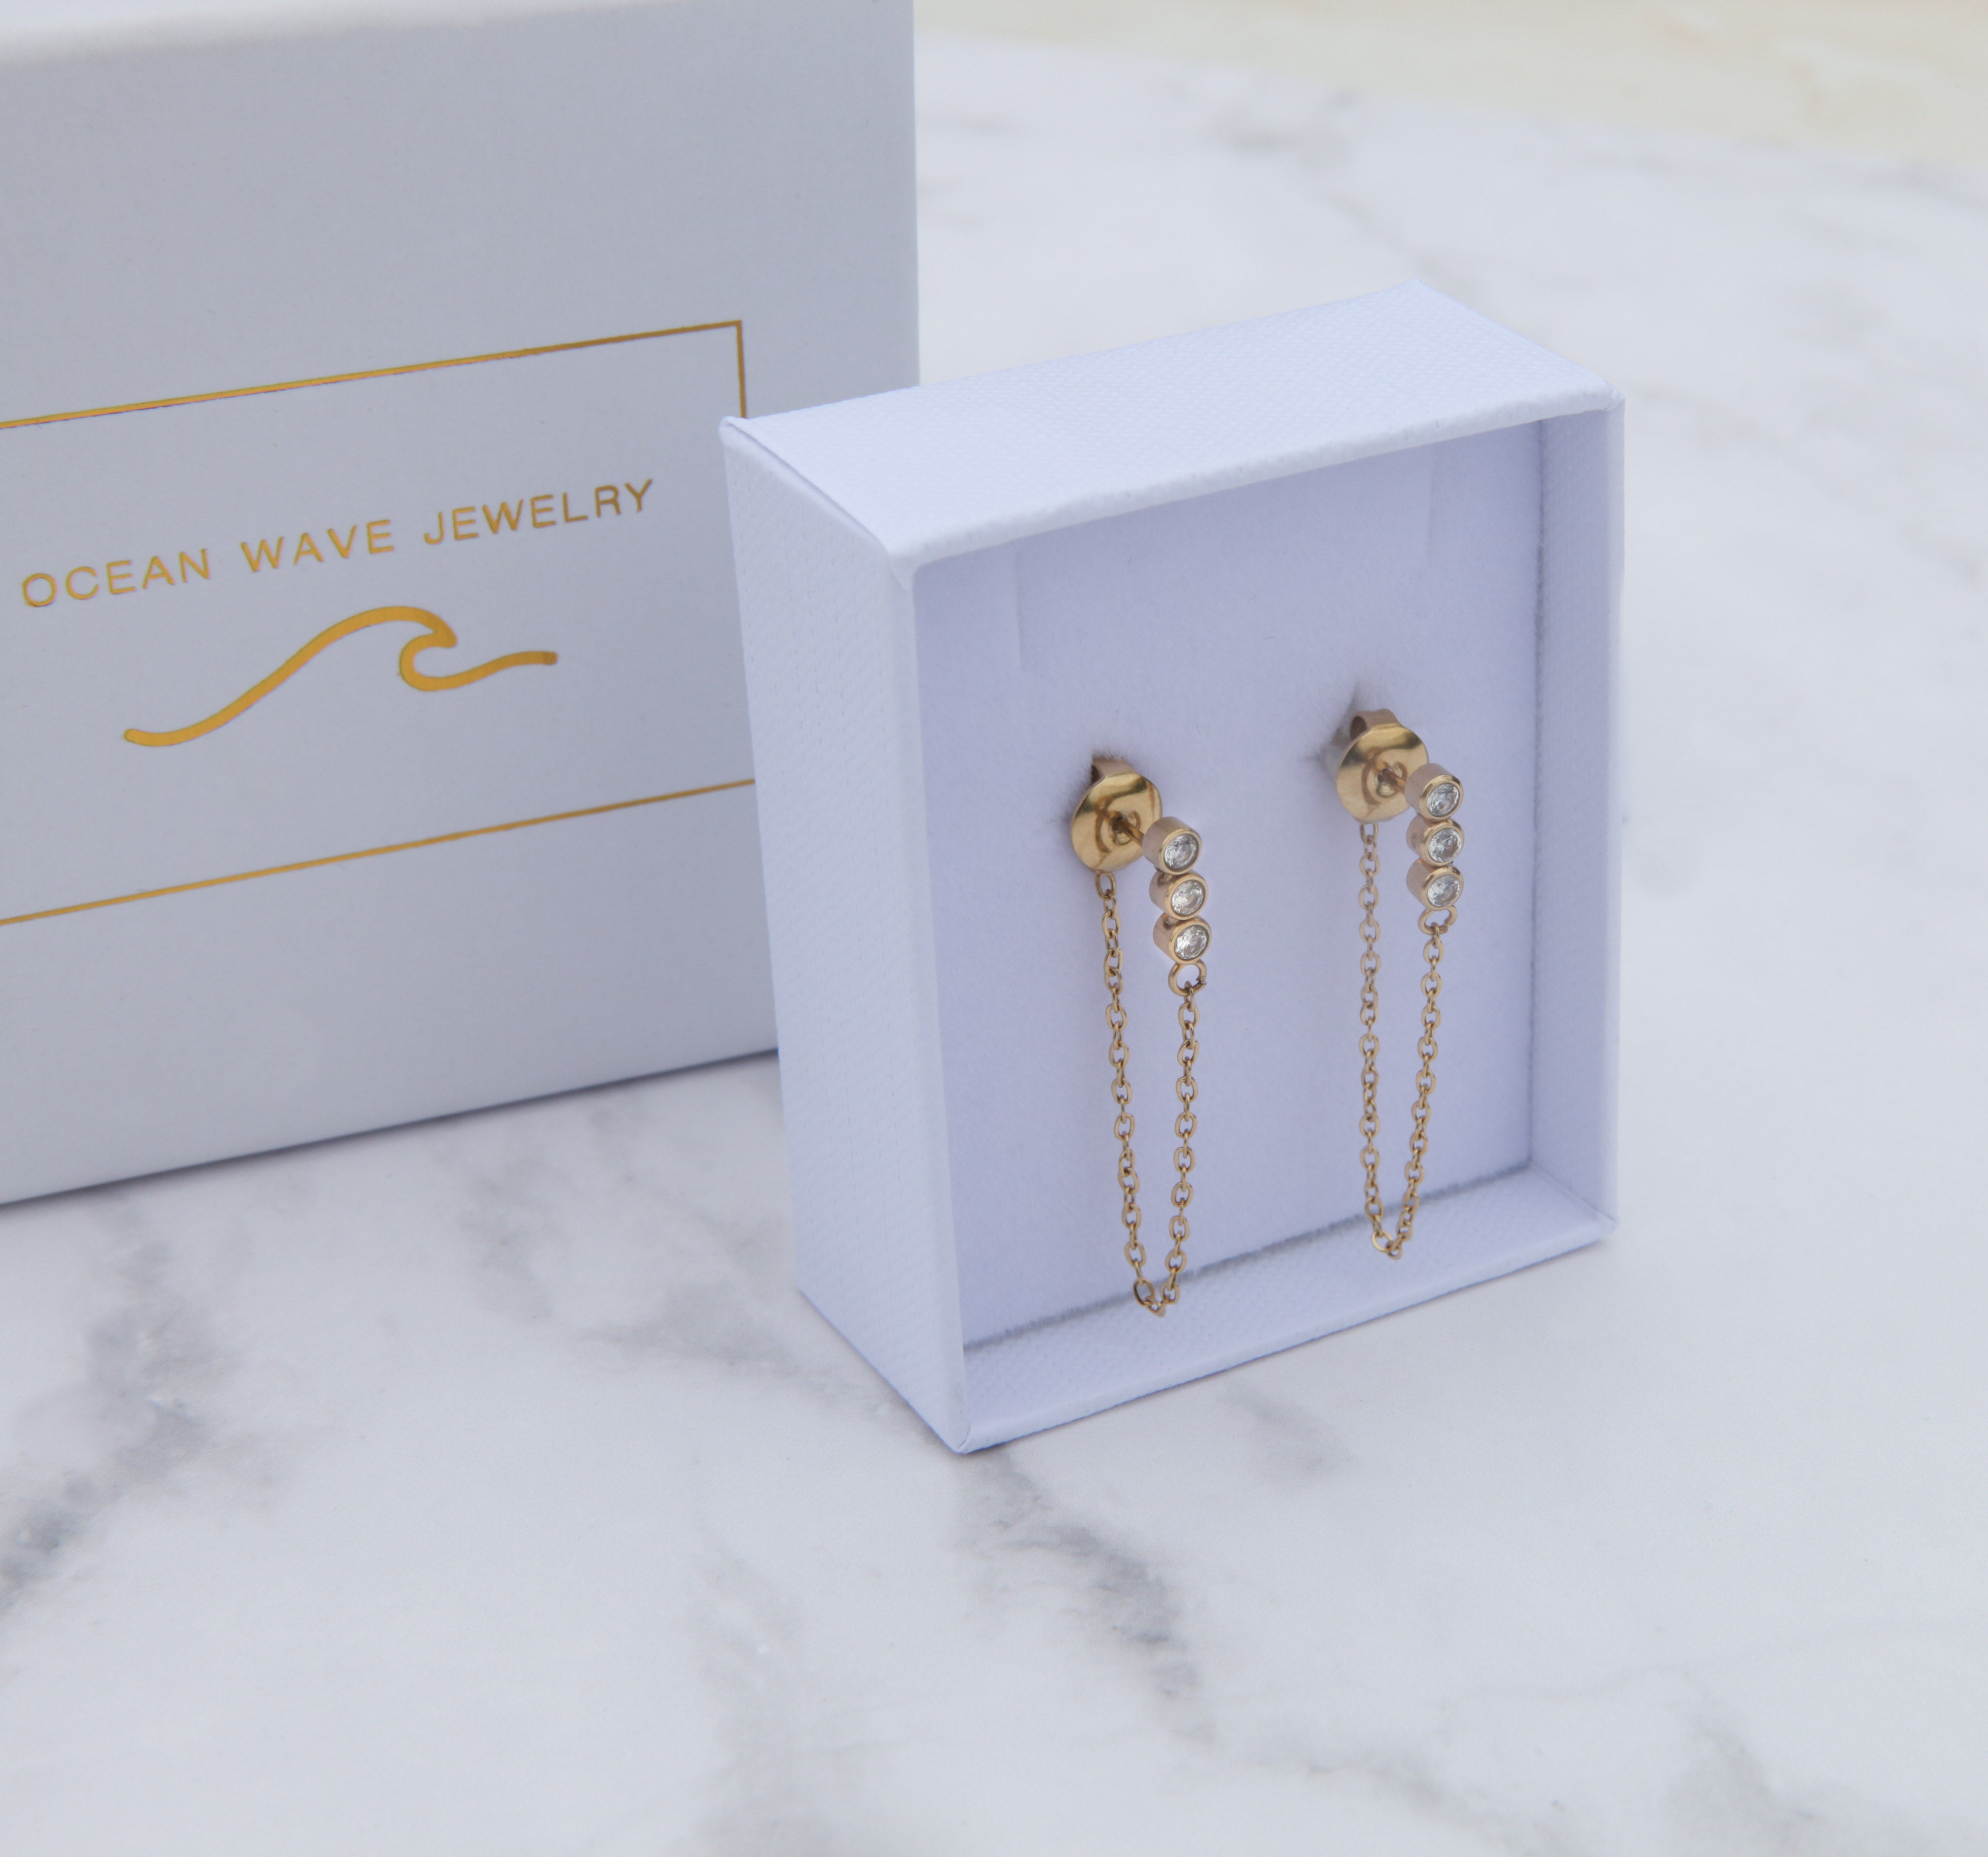 Hamptons - Silver Chain Zirconia Earrings - Ocean Wave Jewelry